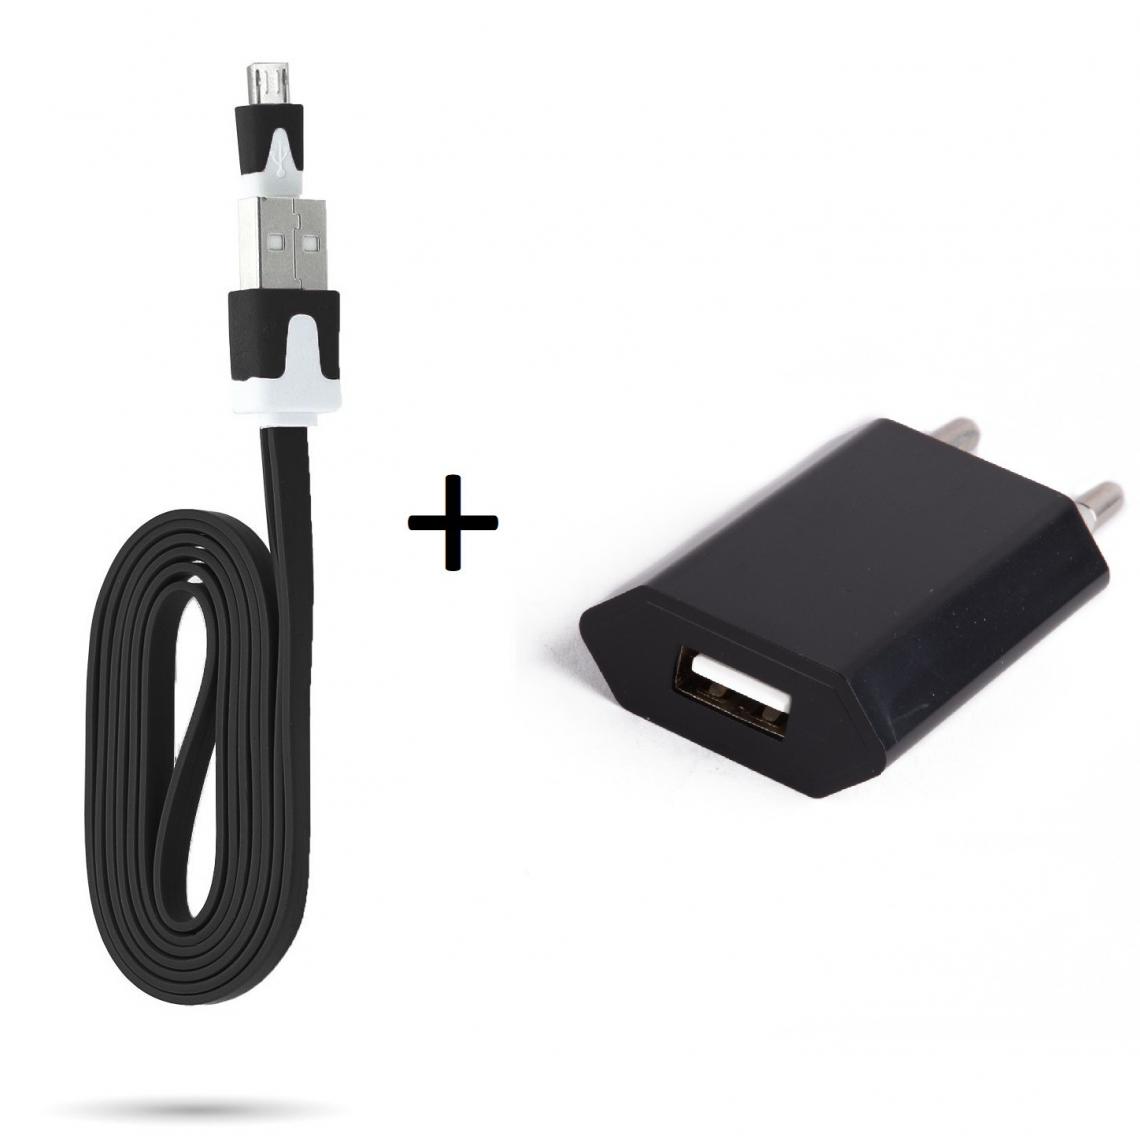 Shot - Cable Noodle 1m Chargeur + Prise Secteur pour XIAOMI Redmi S2 Smartphone Micro USB Murale Pack Android (NOIR) - Chargeur secteur téléphone